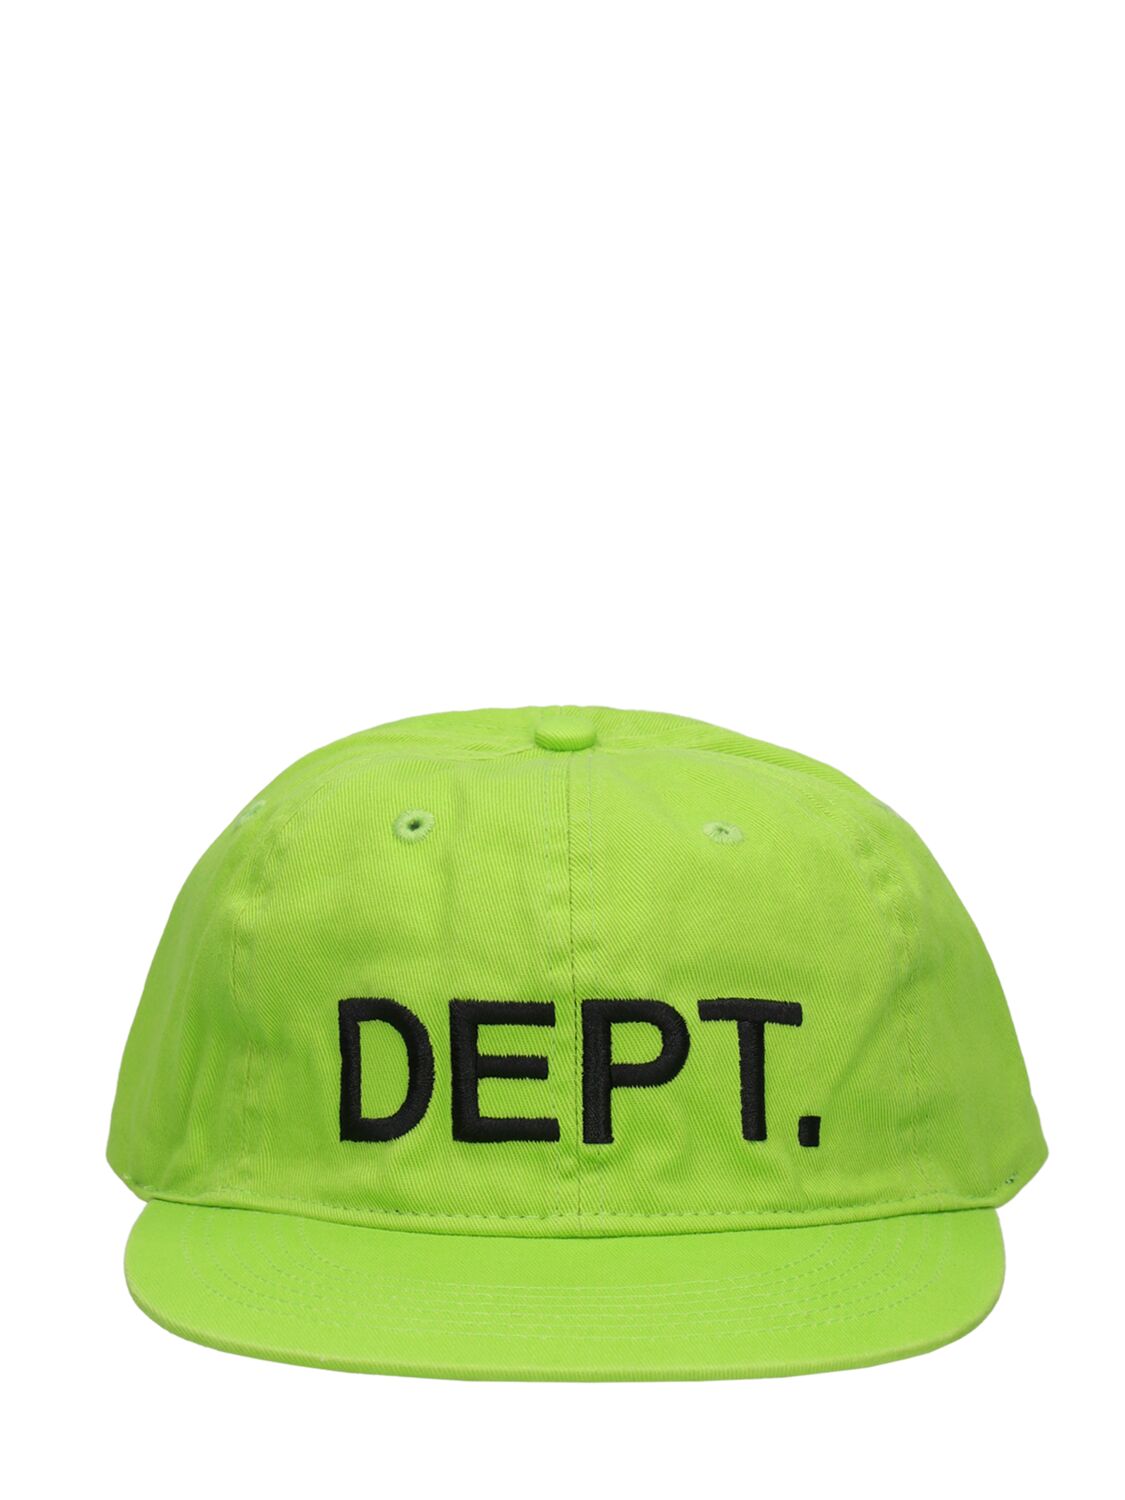 Image of Dept. Hat